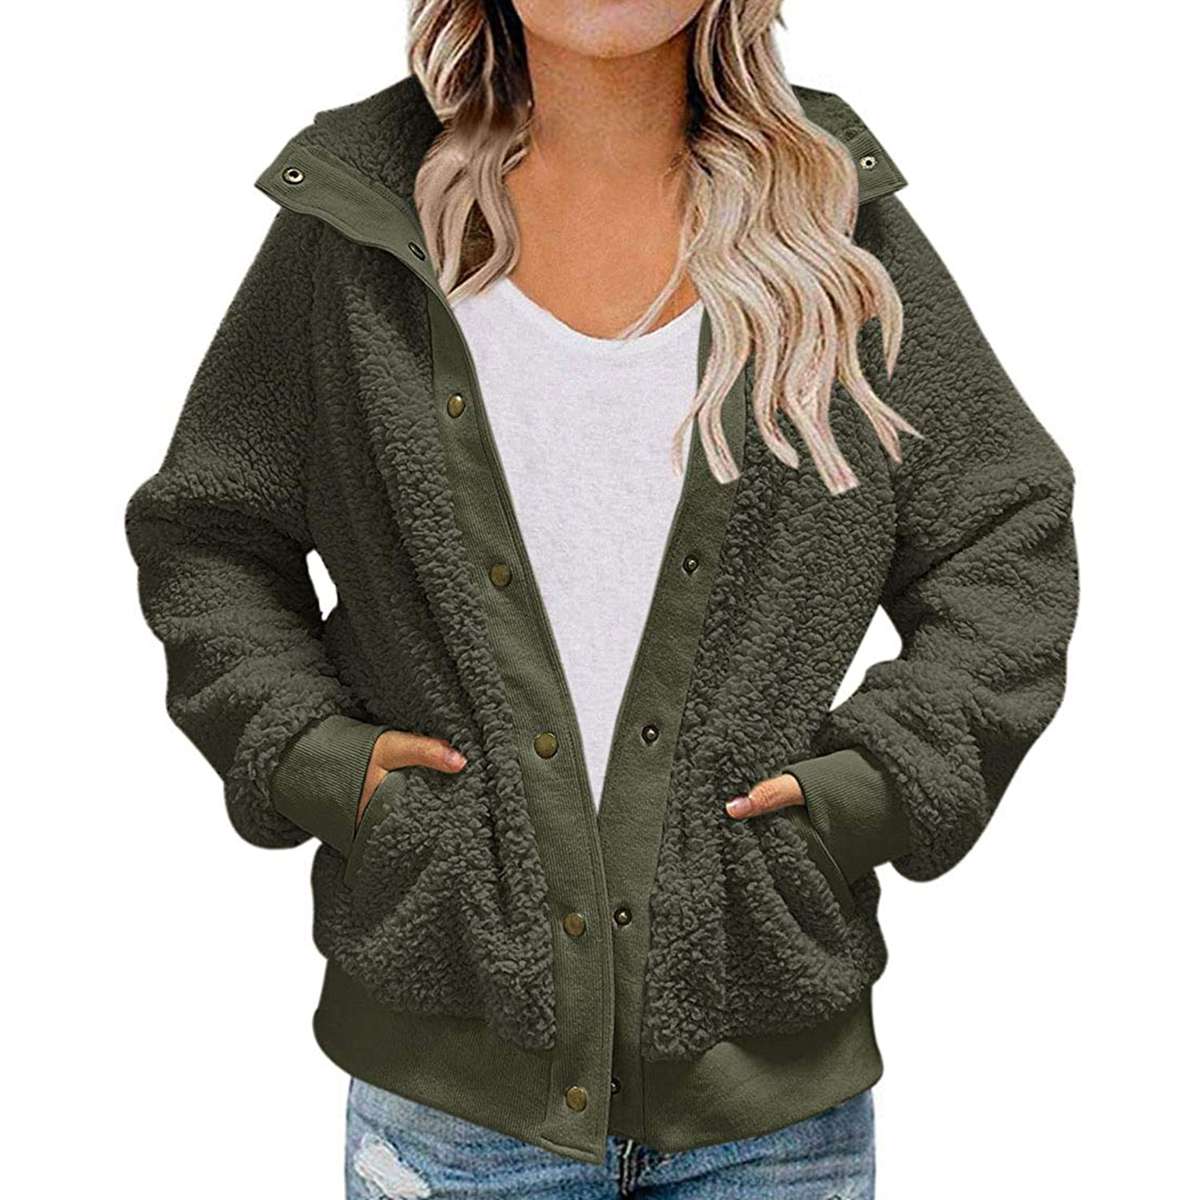 ZHOUYF Womens Fluffy Fleece Warm Coat Winter Thicken Outdoor Long Sleeve Jackets Fashion Splicing Zipper Hoodies Outwear